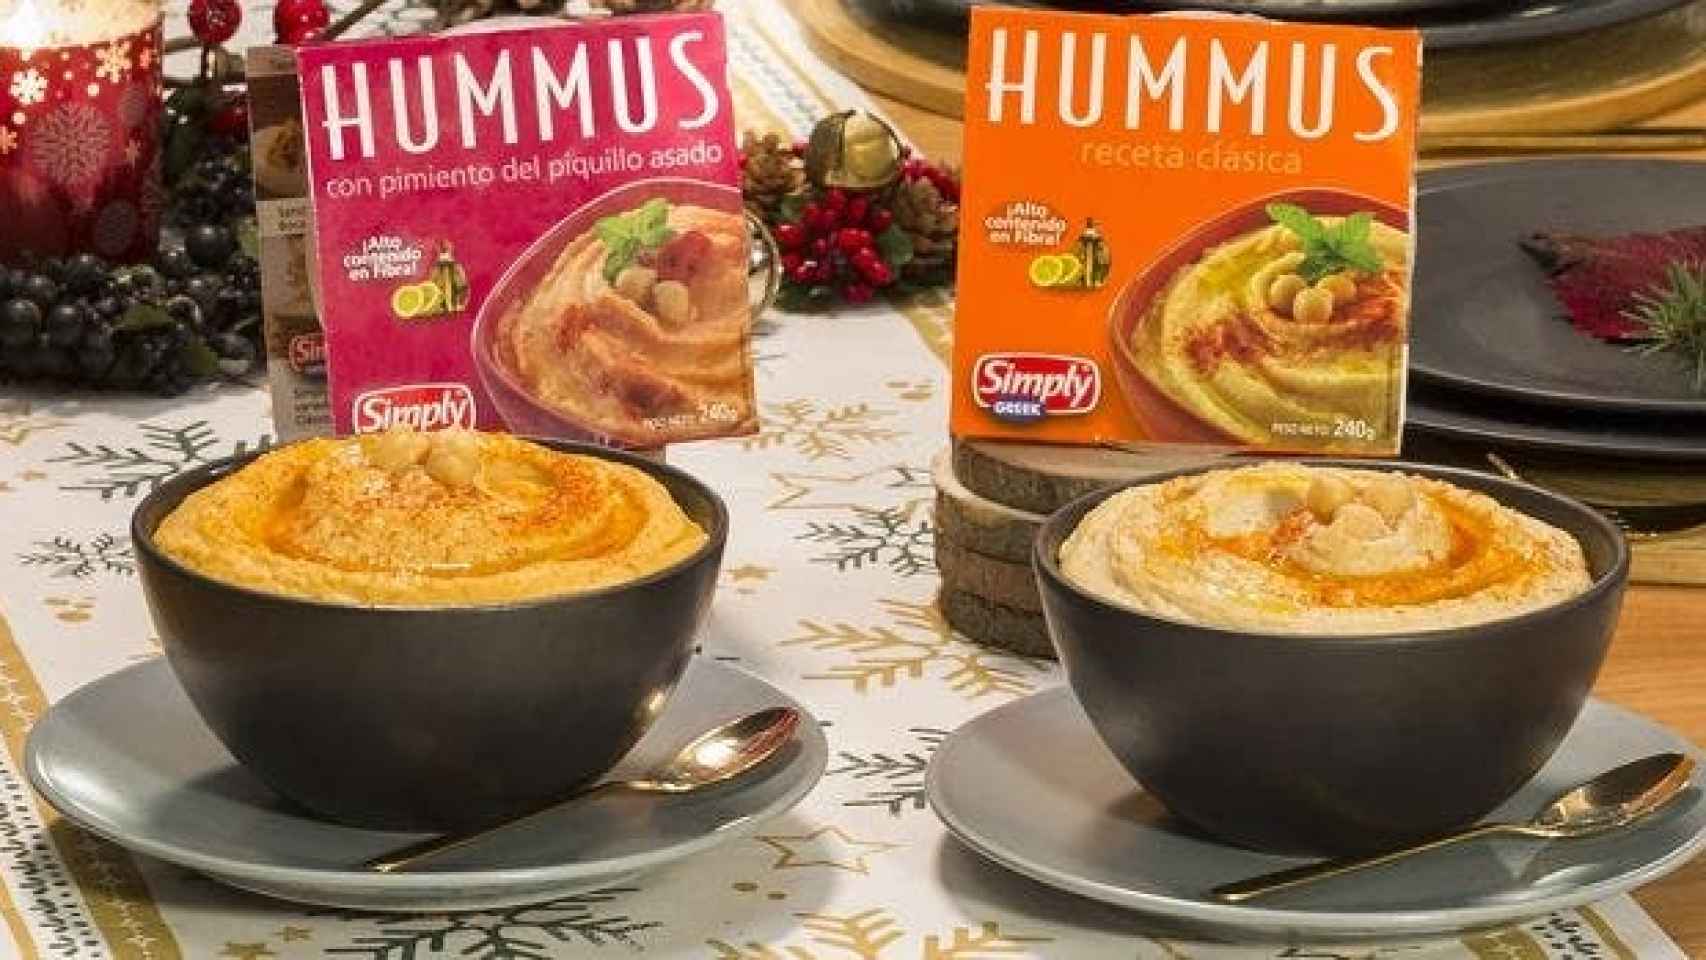 Hummus Hacendado.